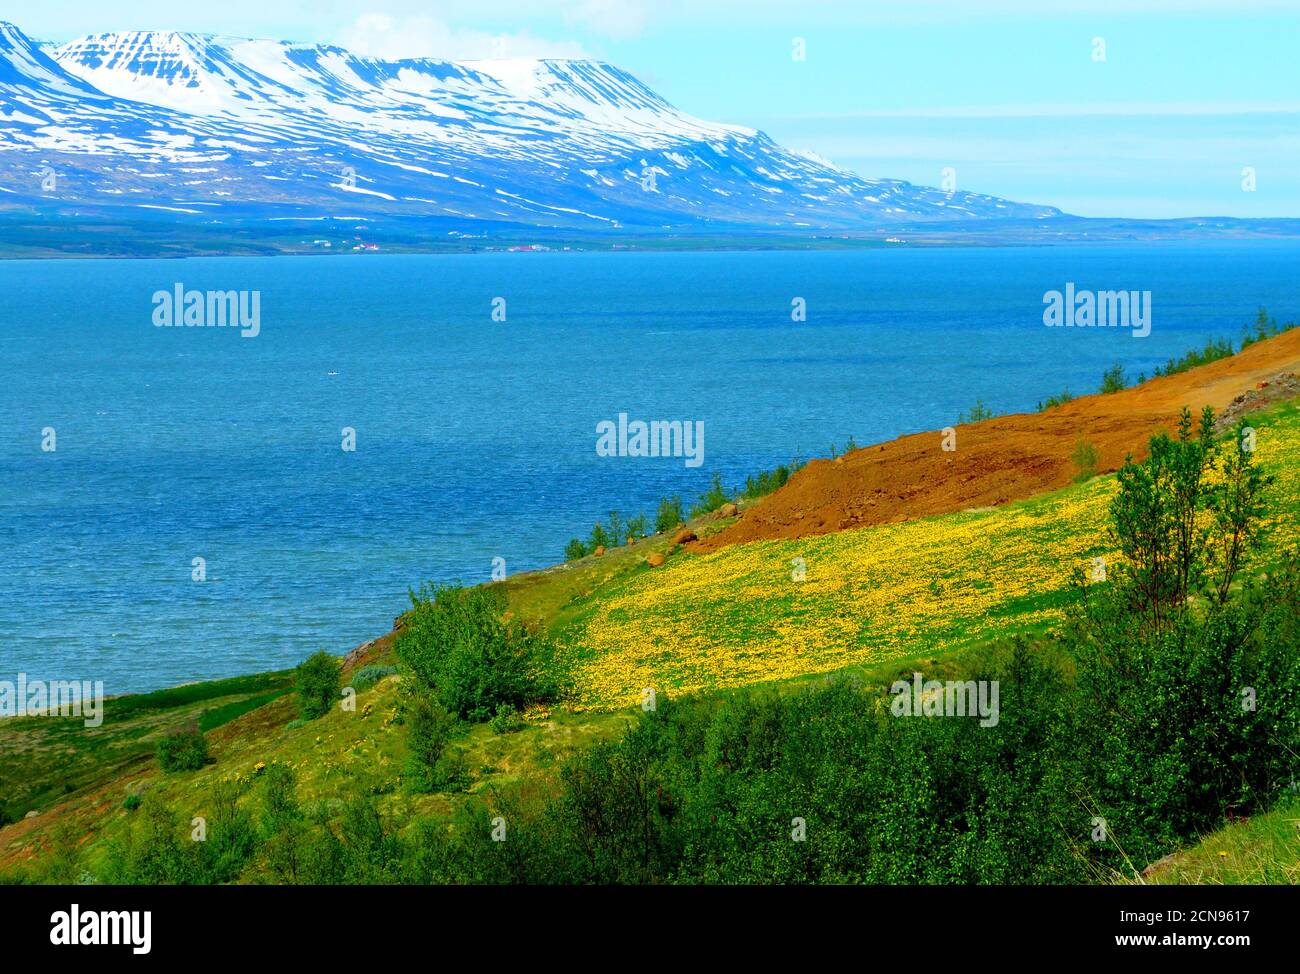 Idyllisch ruhige Landschaft am Fluss bei Akureyri, Island. Tolle isländische Fjorde. Schöner Sommer im Norden. Stockfoto